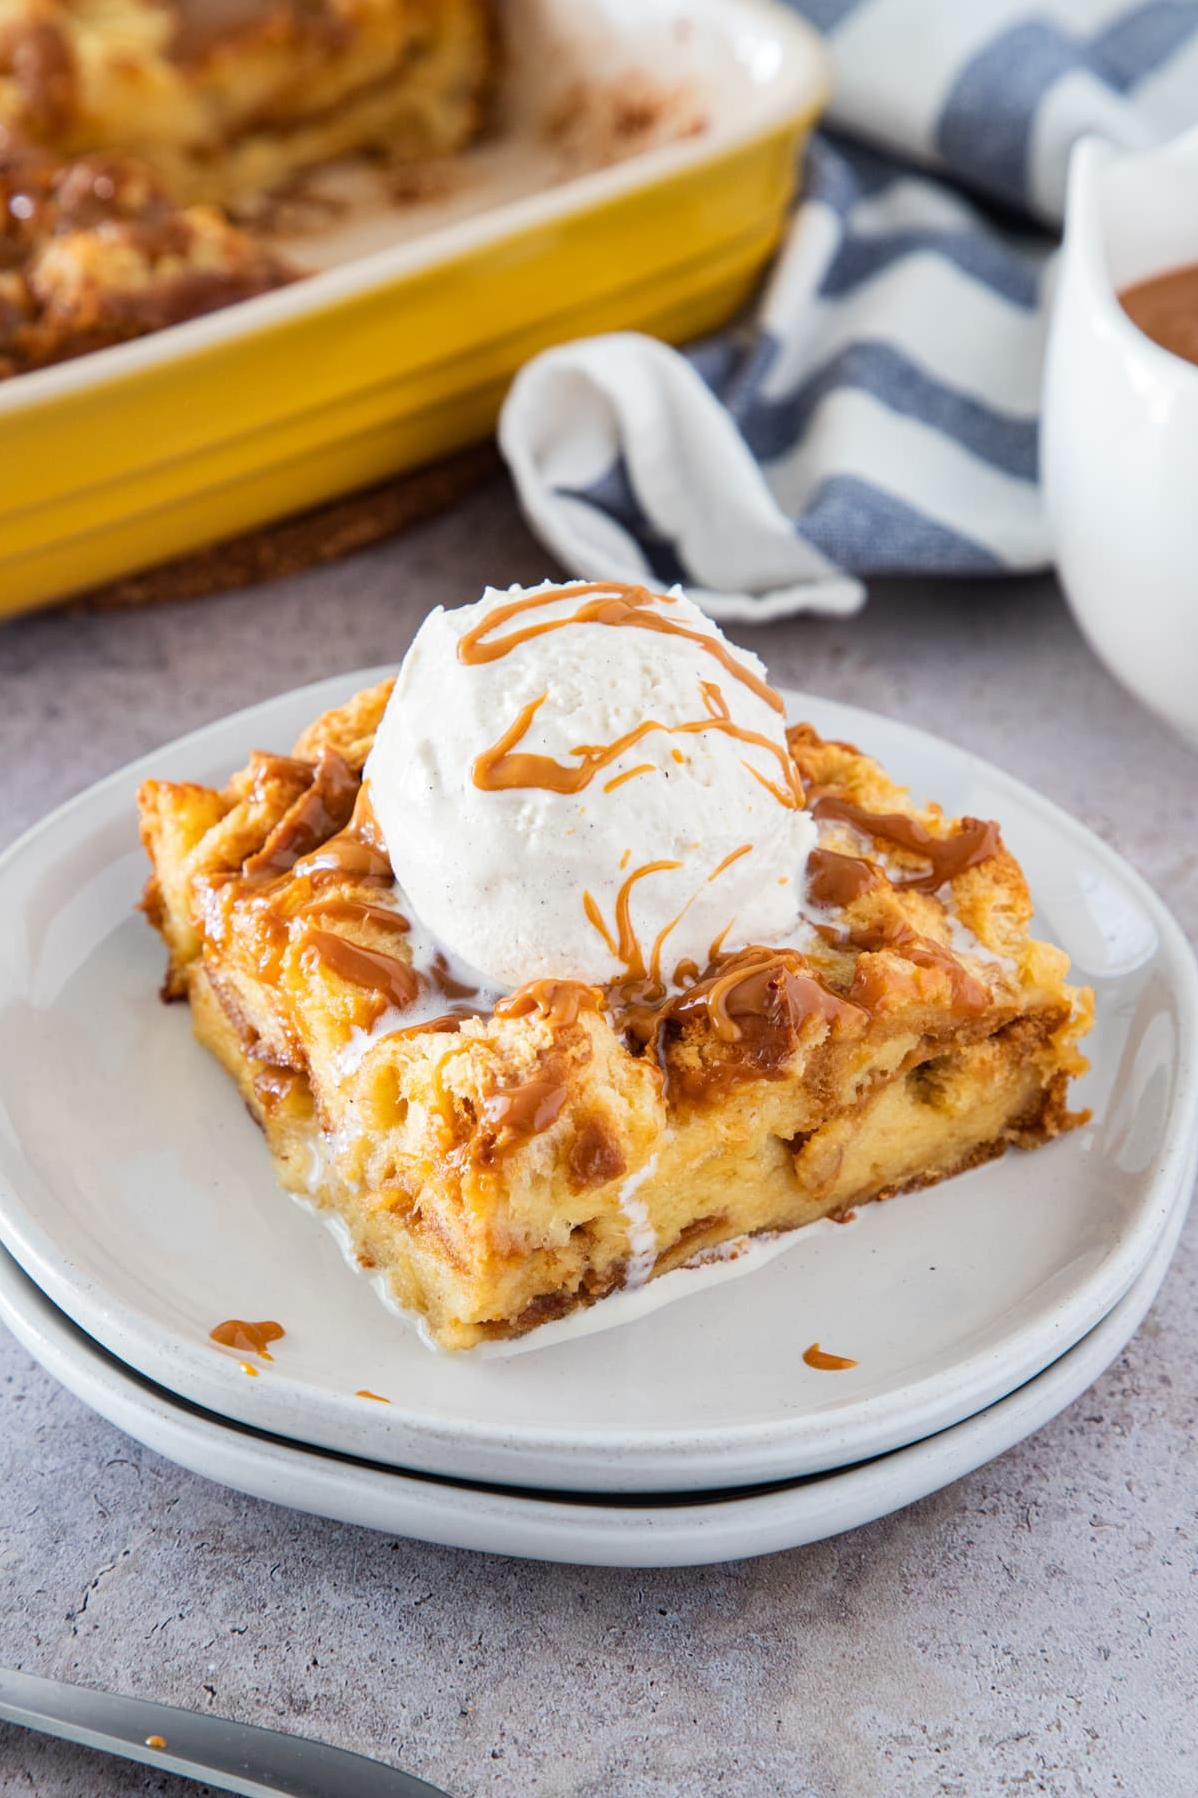  Say hello to your new favorite dessert: Dulce de Leche Bread Pudding.